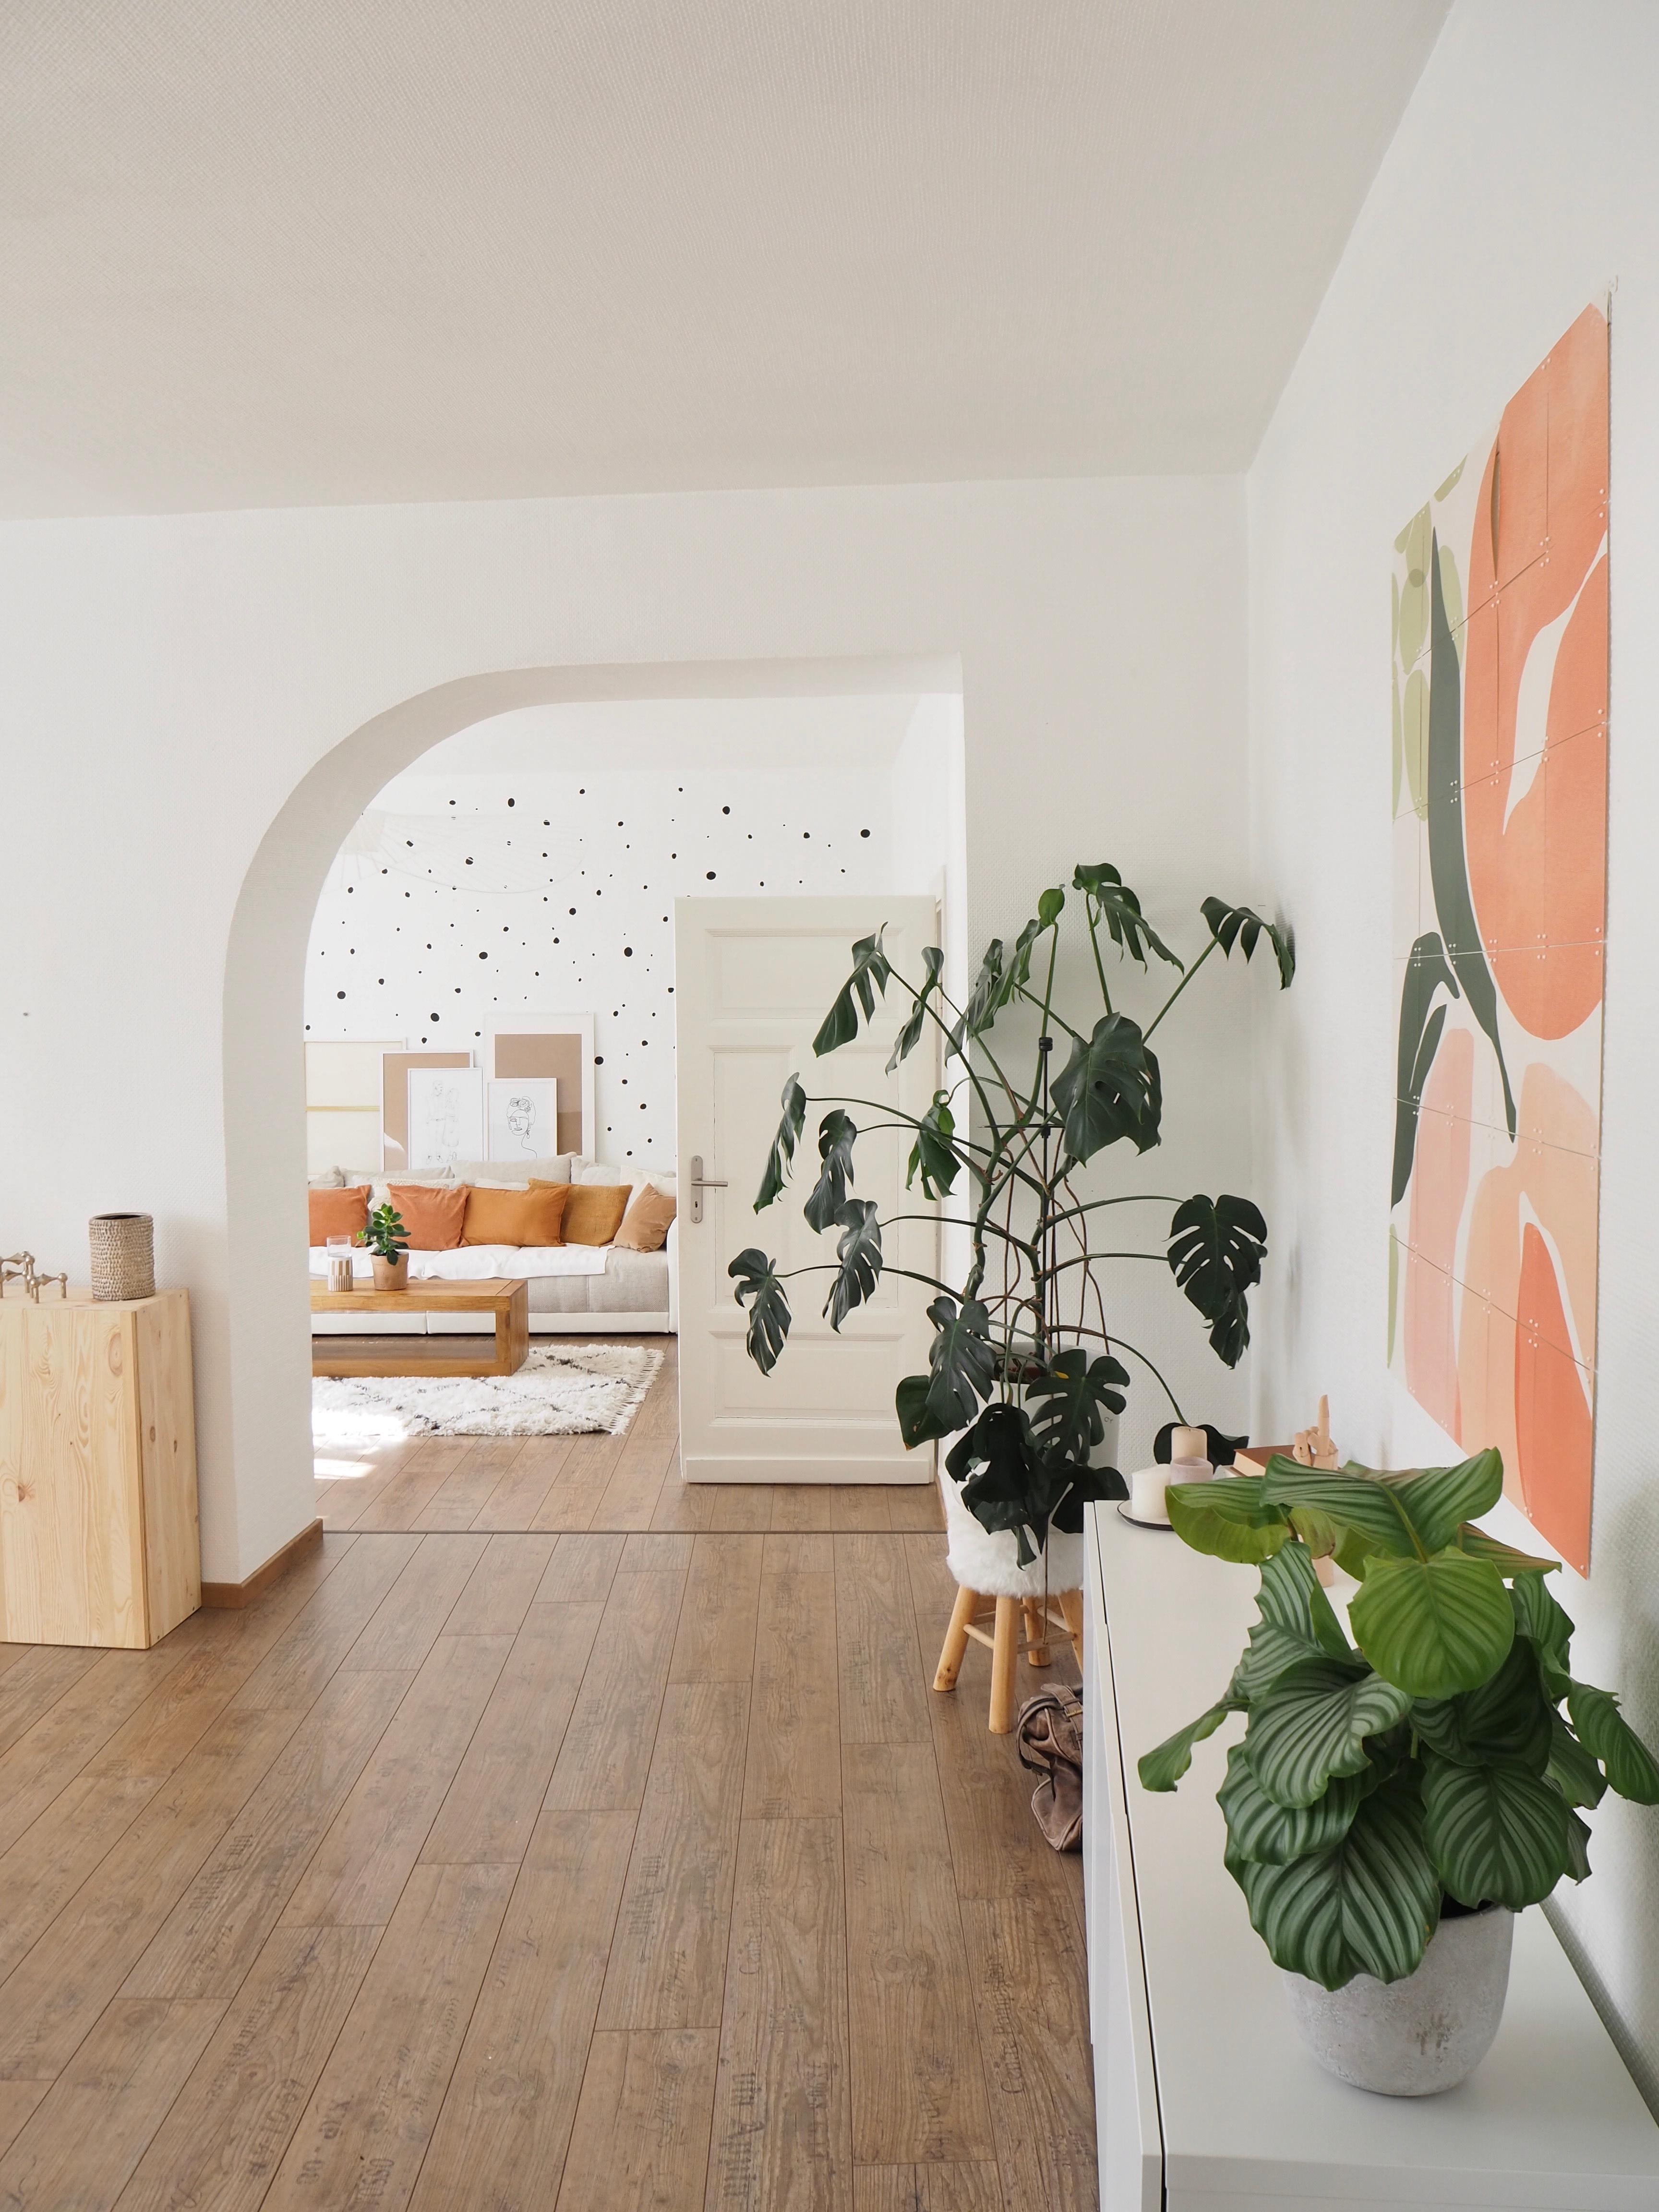 #wohnzimmer #durchgang #rundbogen #wandbild #wandgestaltung #pflanzen #terracotta